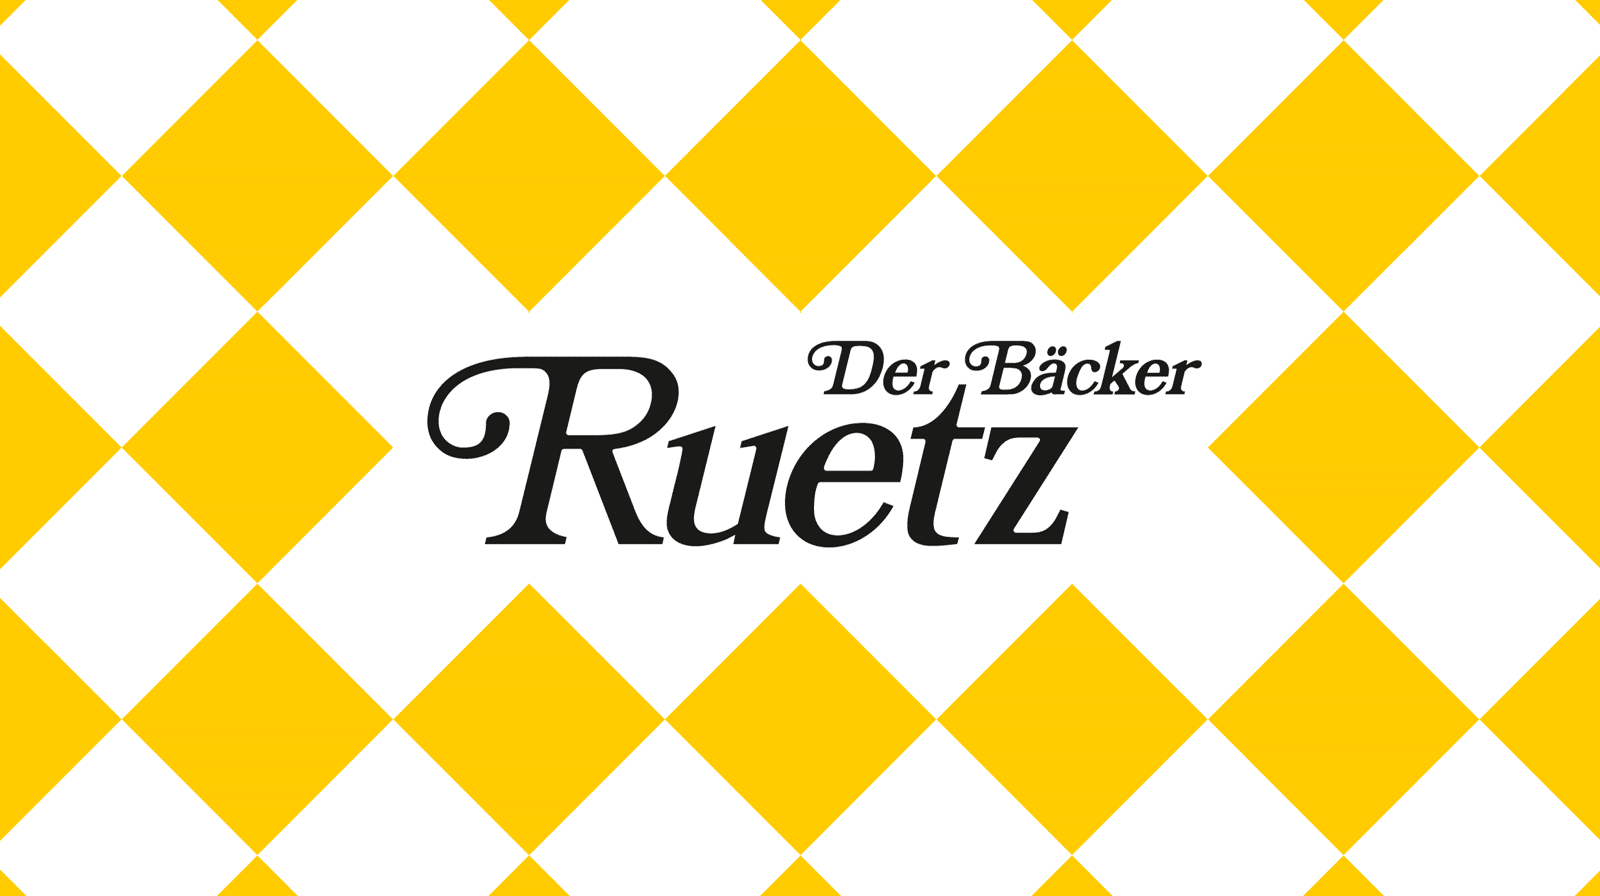 Das Logo der Bäckerei Ruetz für den Markenrelaunch